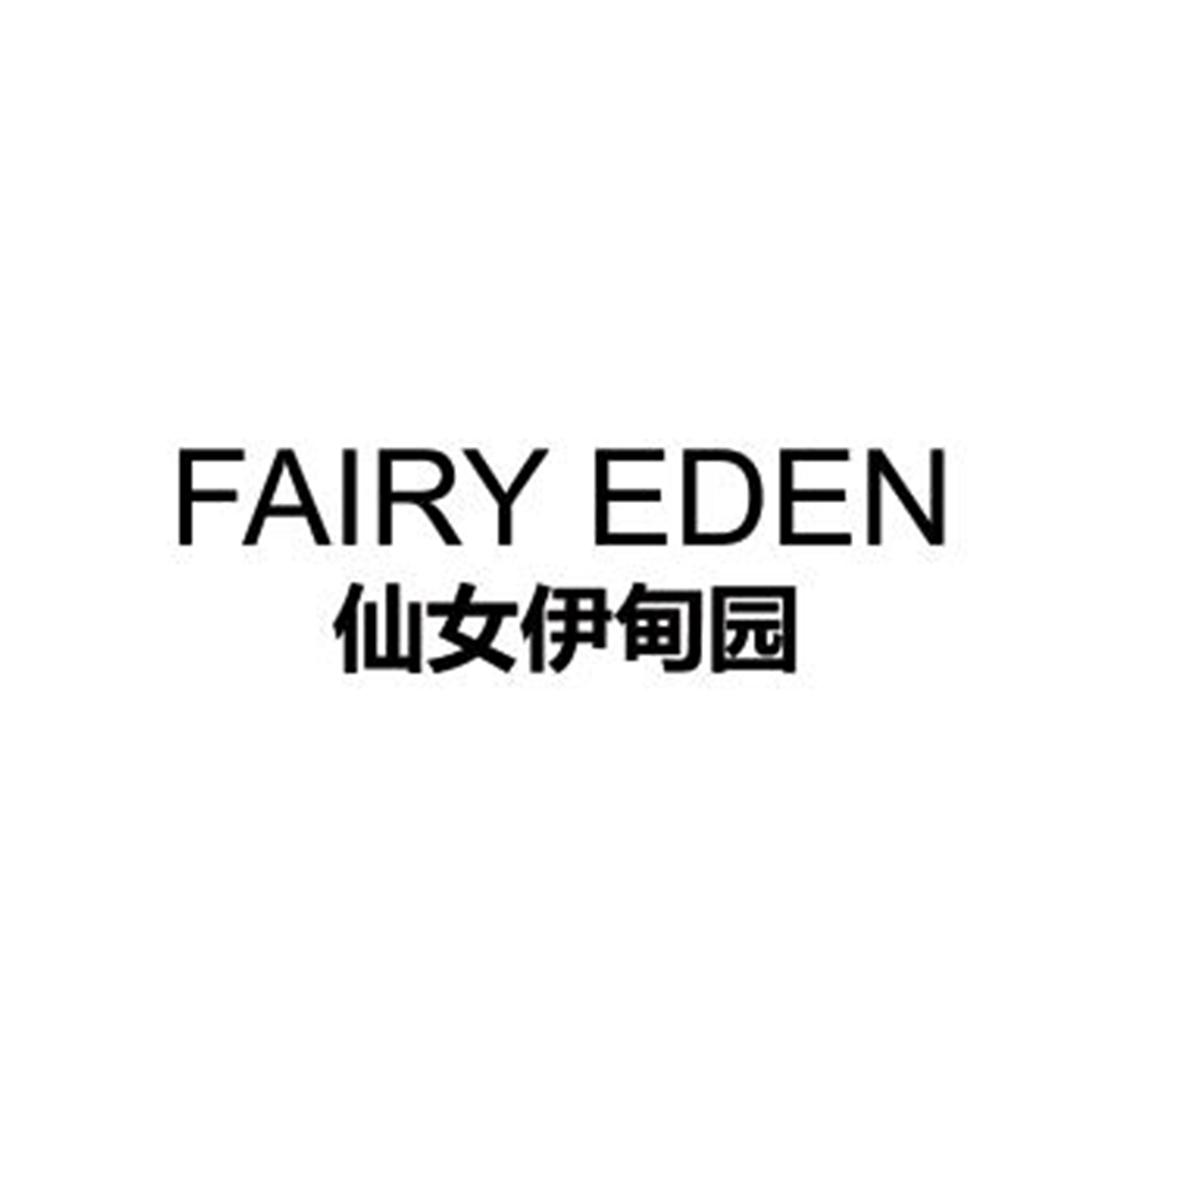 35类-广告销售仙女伊甸园 FAIRY EDEN商标转让